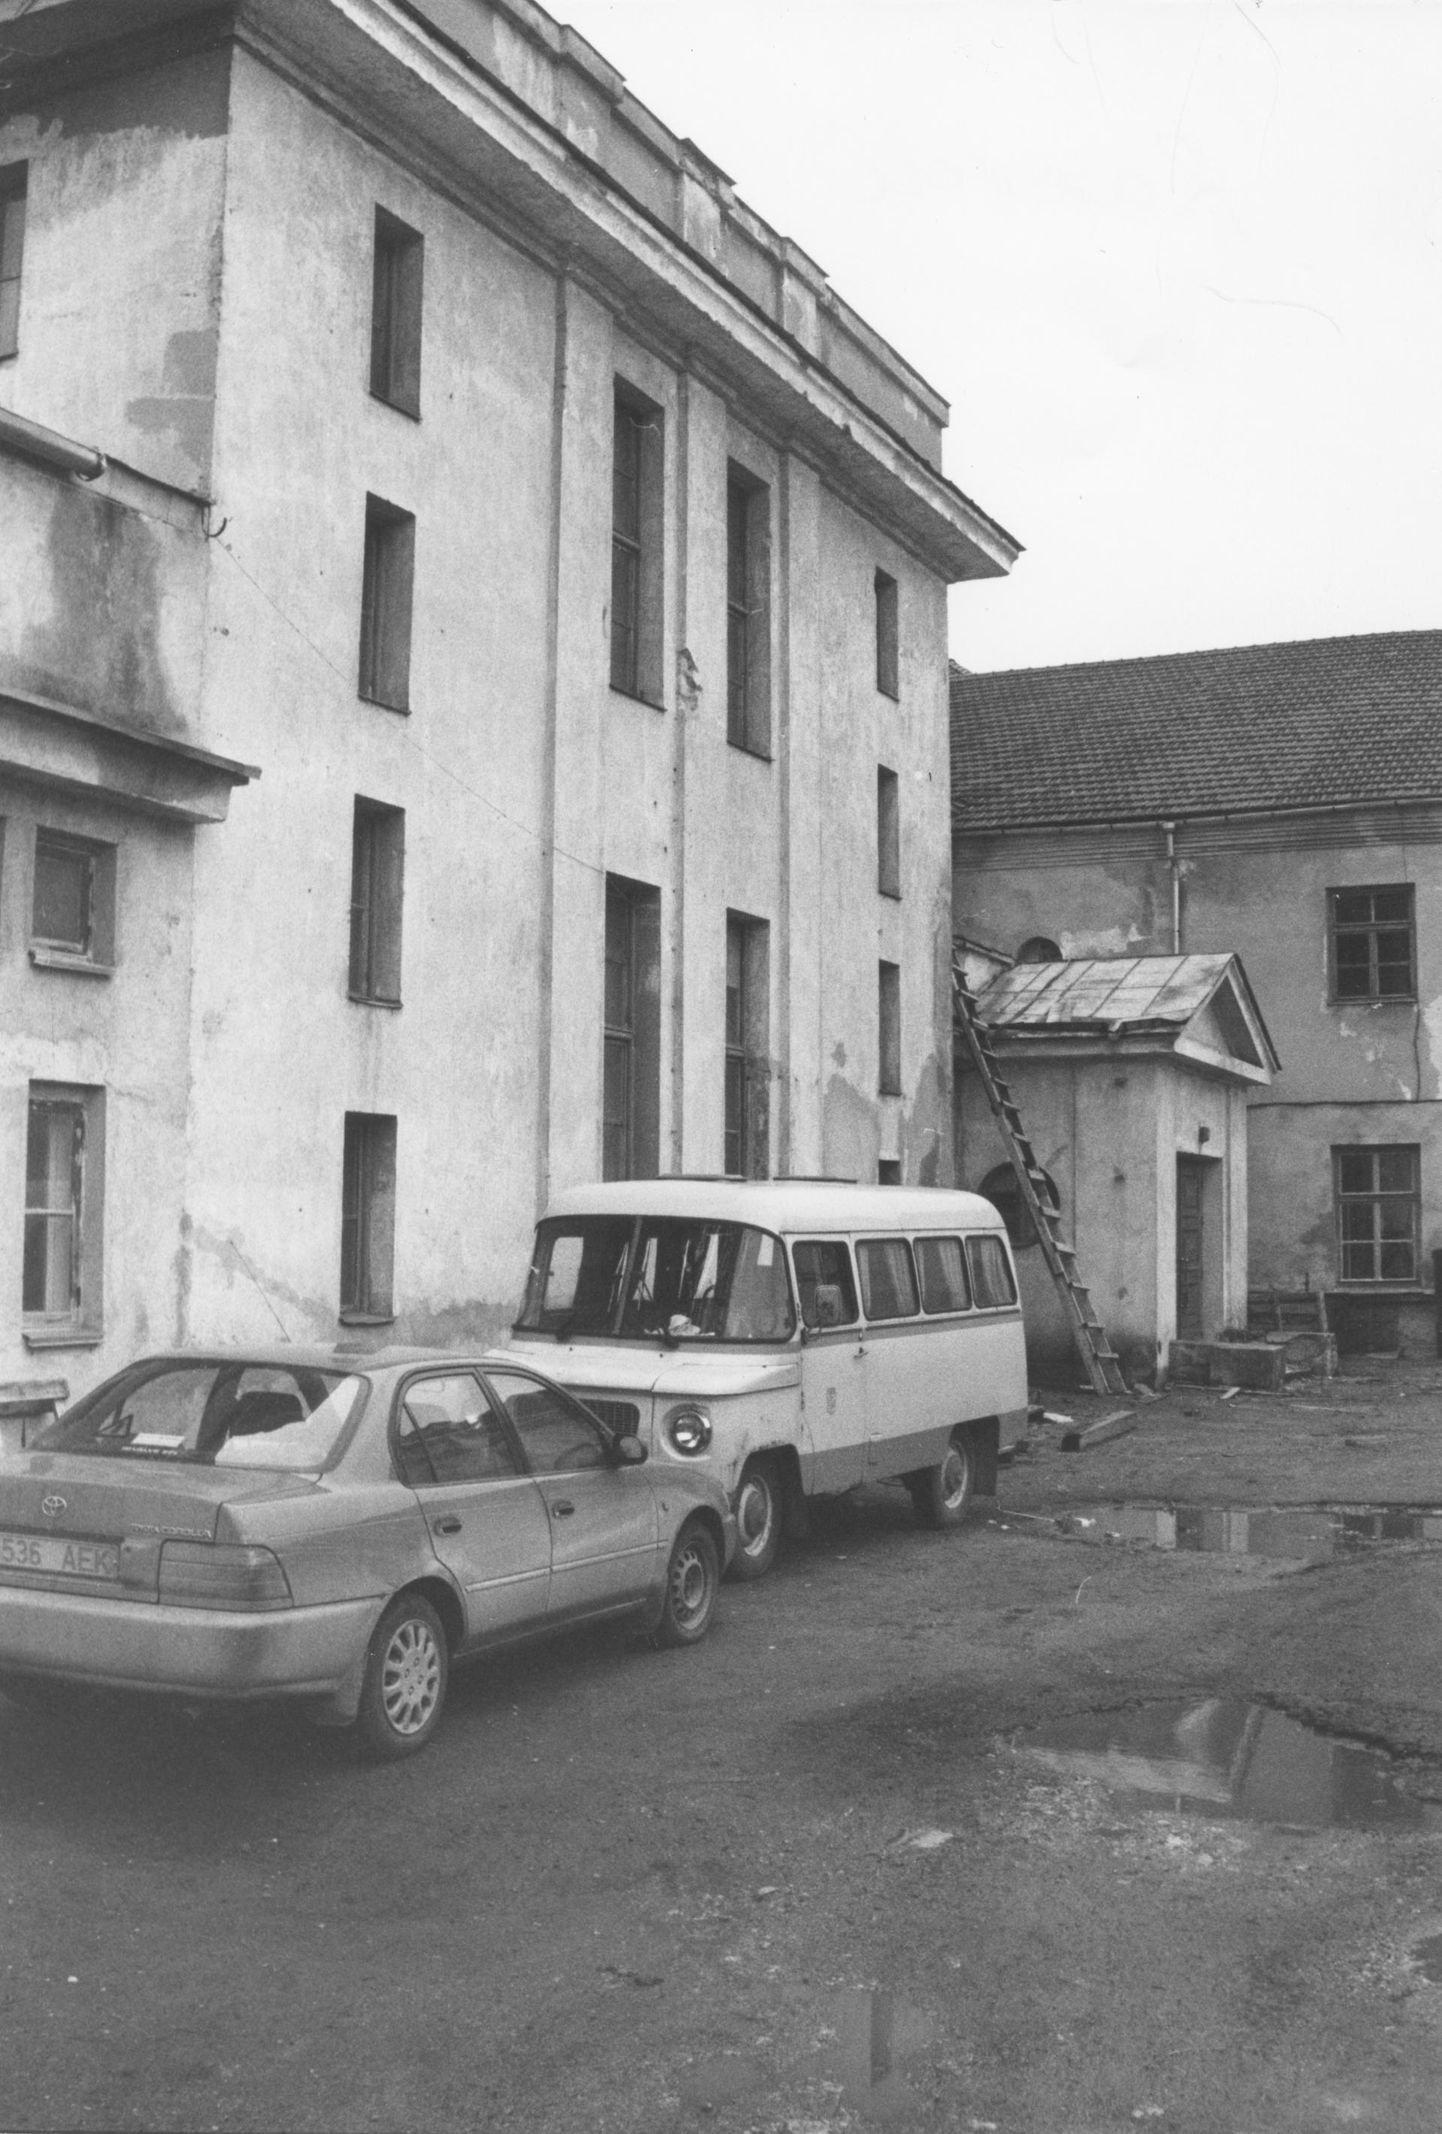 Rakvere teatrihoone oli 1980-ndate lõpus armetus seisus.